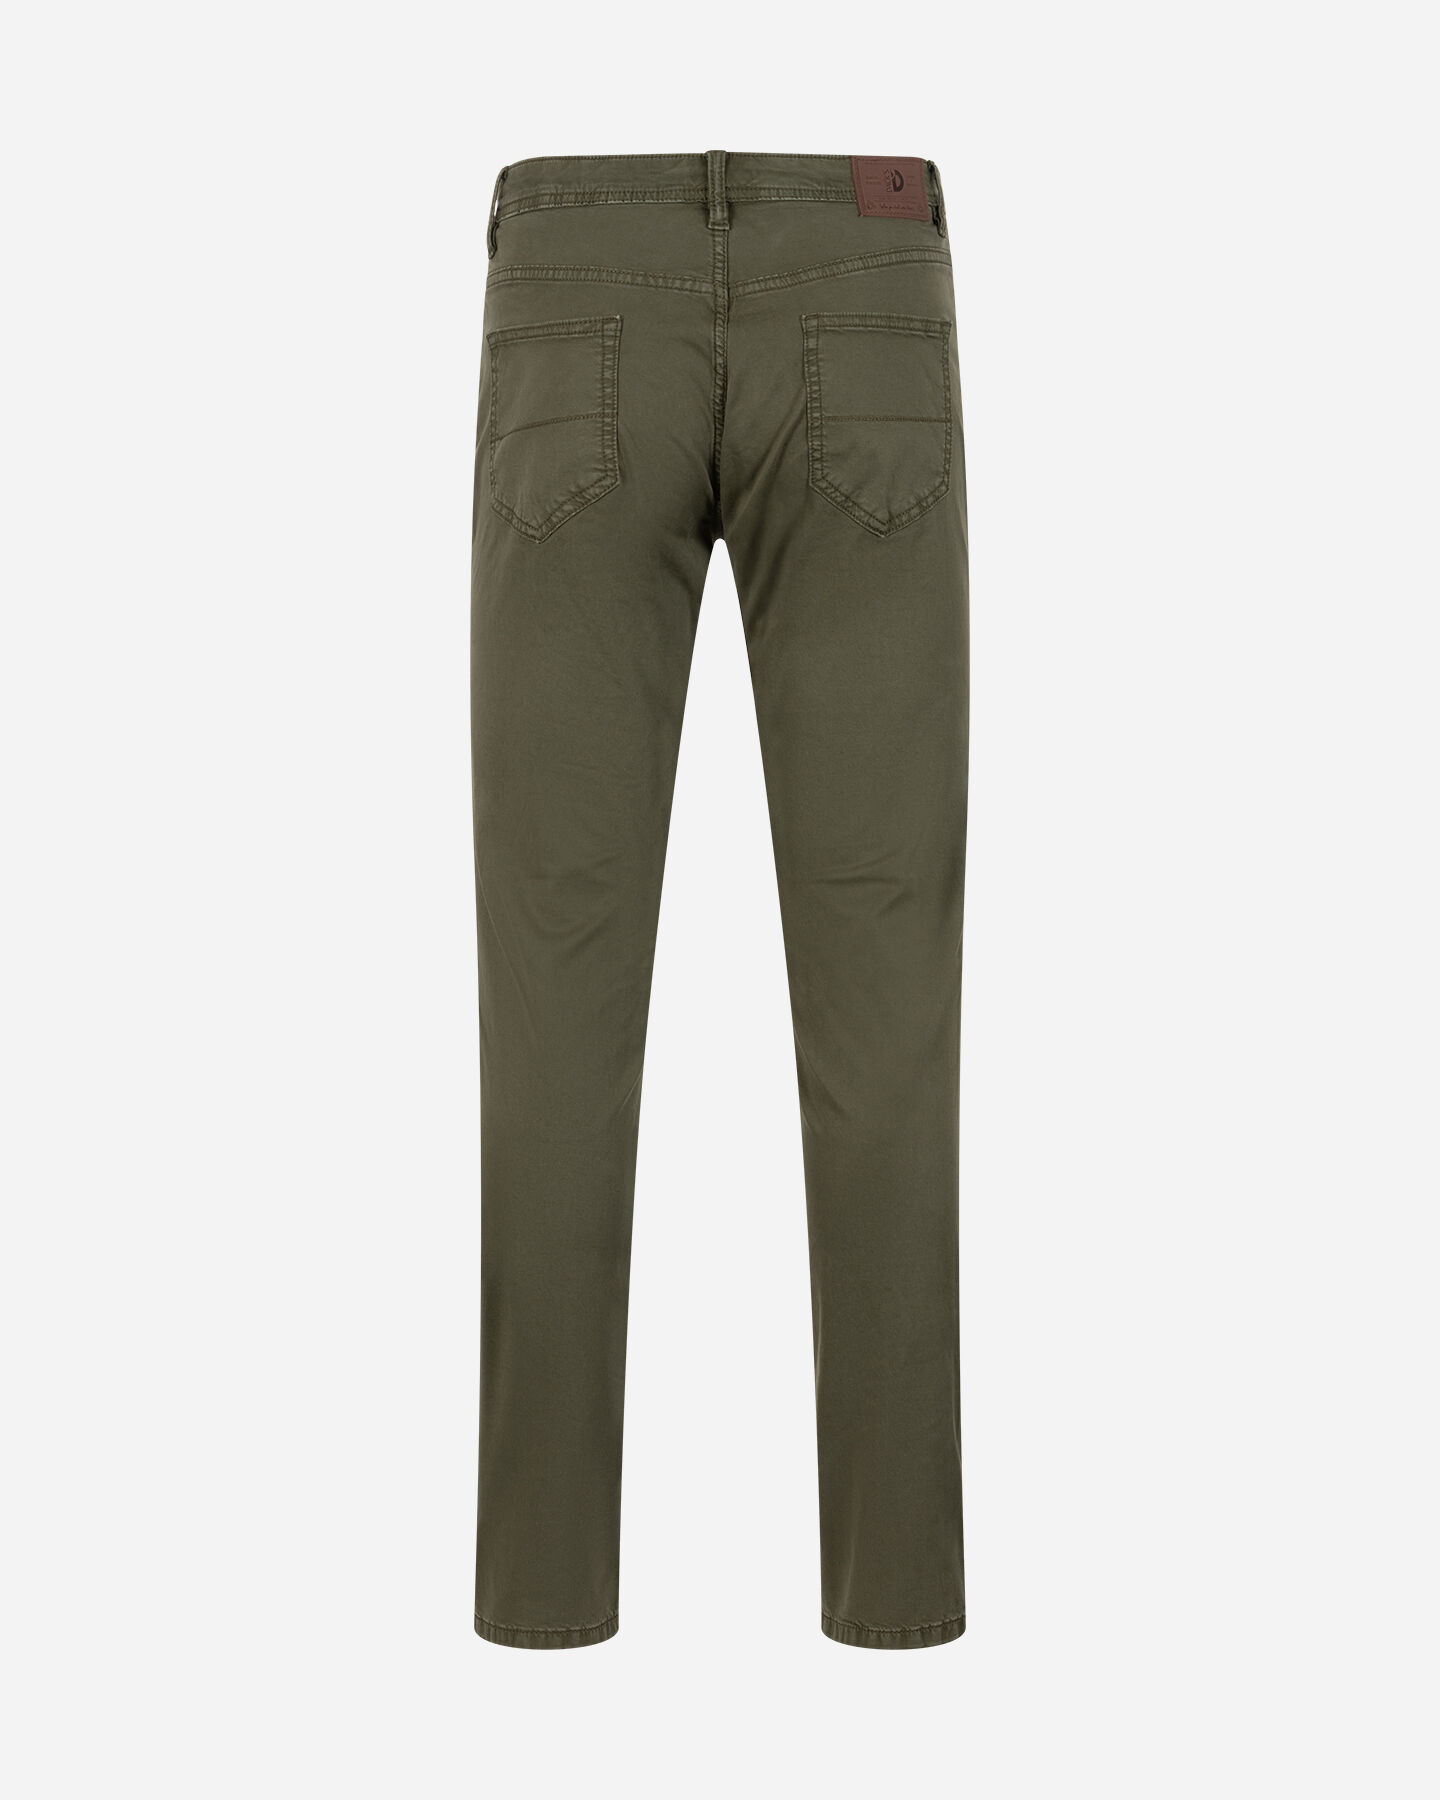  Pantalone DACK'S ESSENTIAL M S4129743|762|44 scatto 5